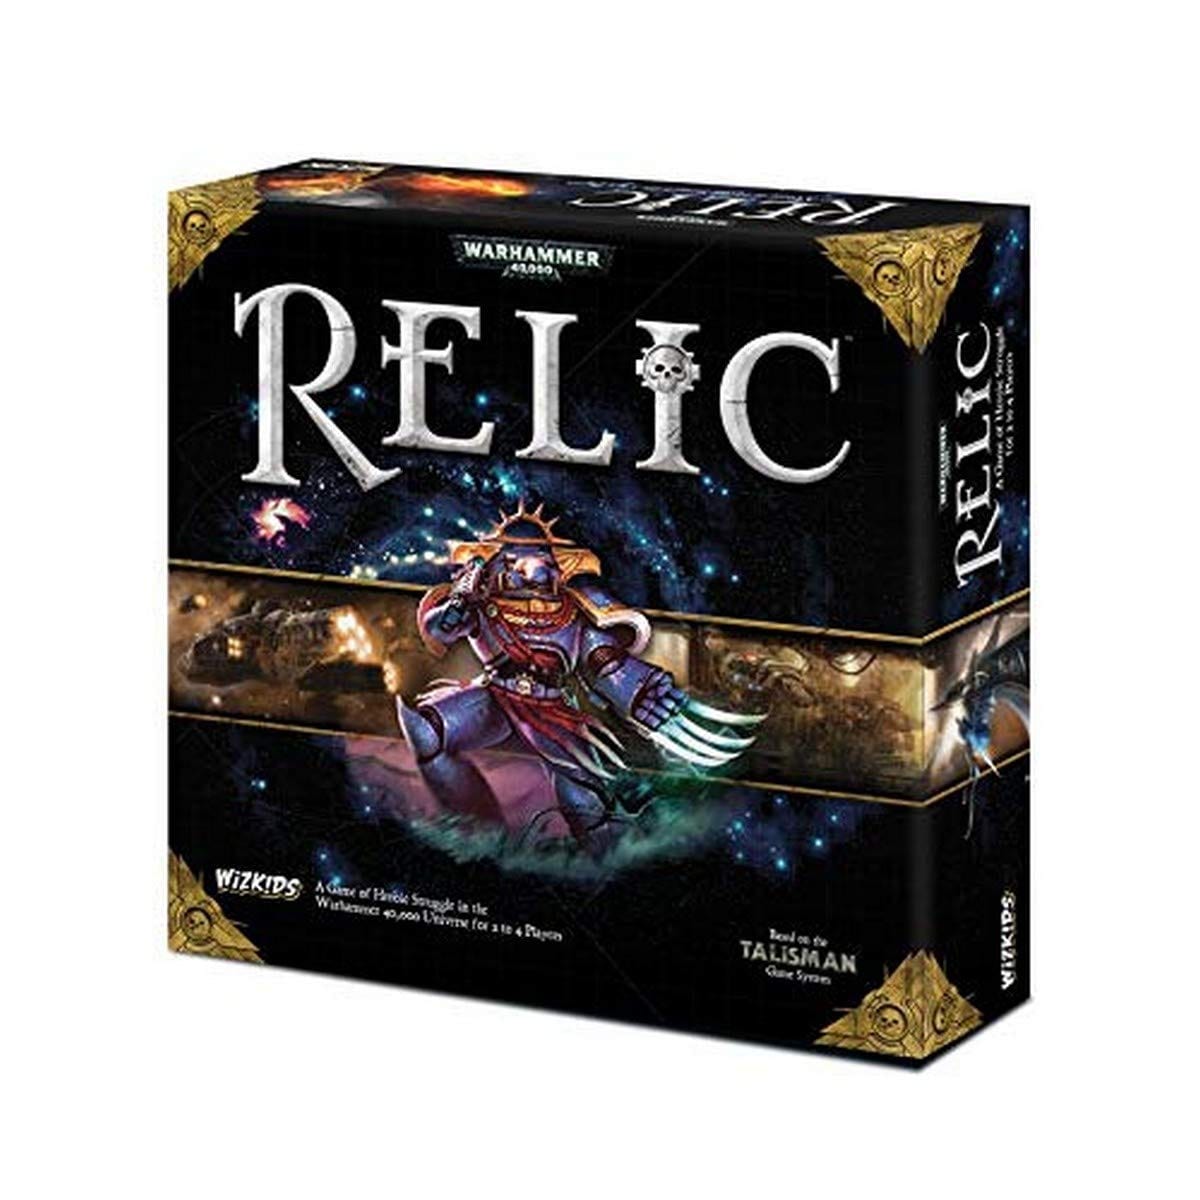 Wizkids/Neca Board Games Wizkids/Neca Warhammer 40,000: Relic (Standard Edition)